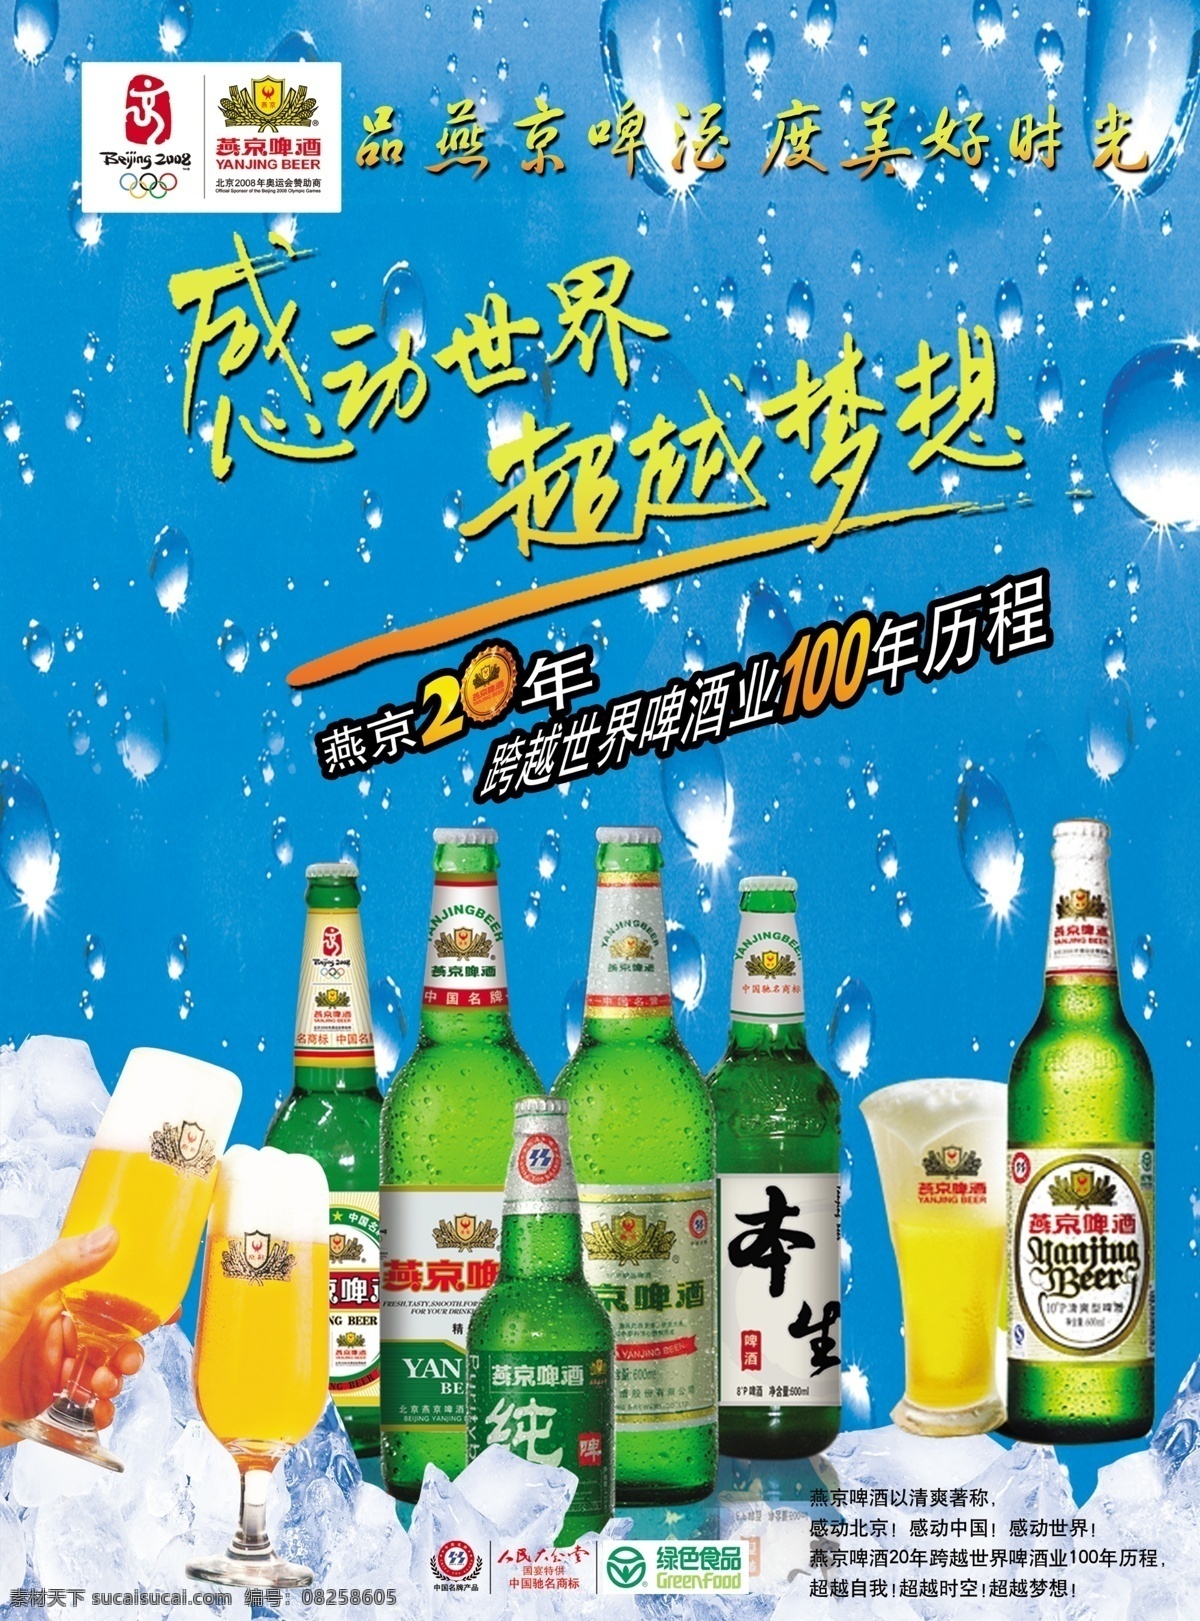 燕京啤酒 燕京各种啤酒 燕京啤酒标志 冰爽一夏 水珠底纹 冰块 奥运会标志 啤酒广告 广告设计模板 源文件